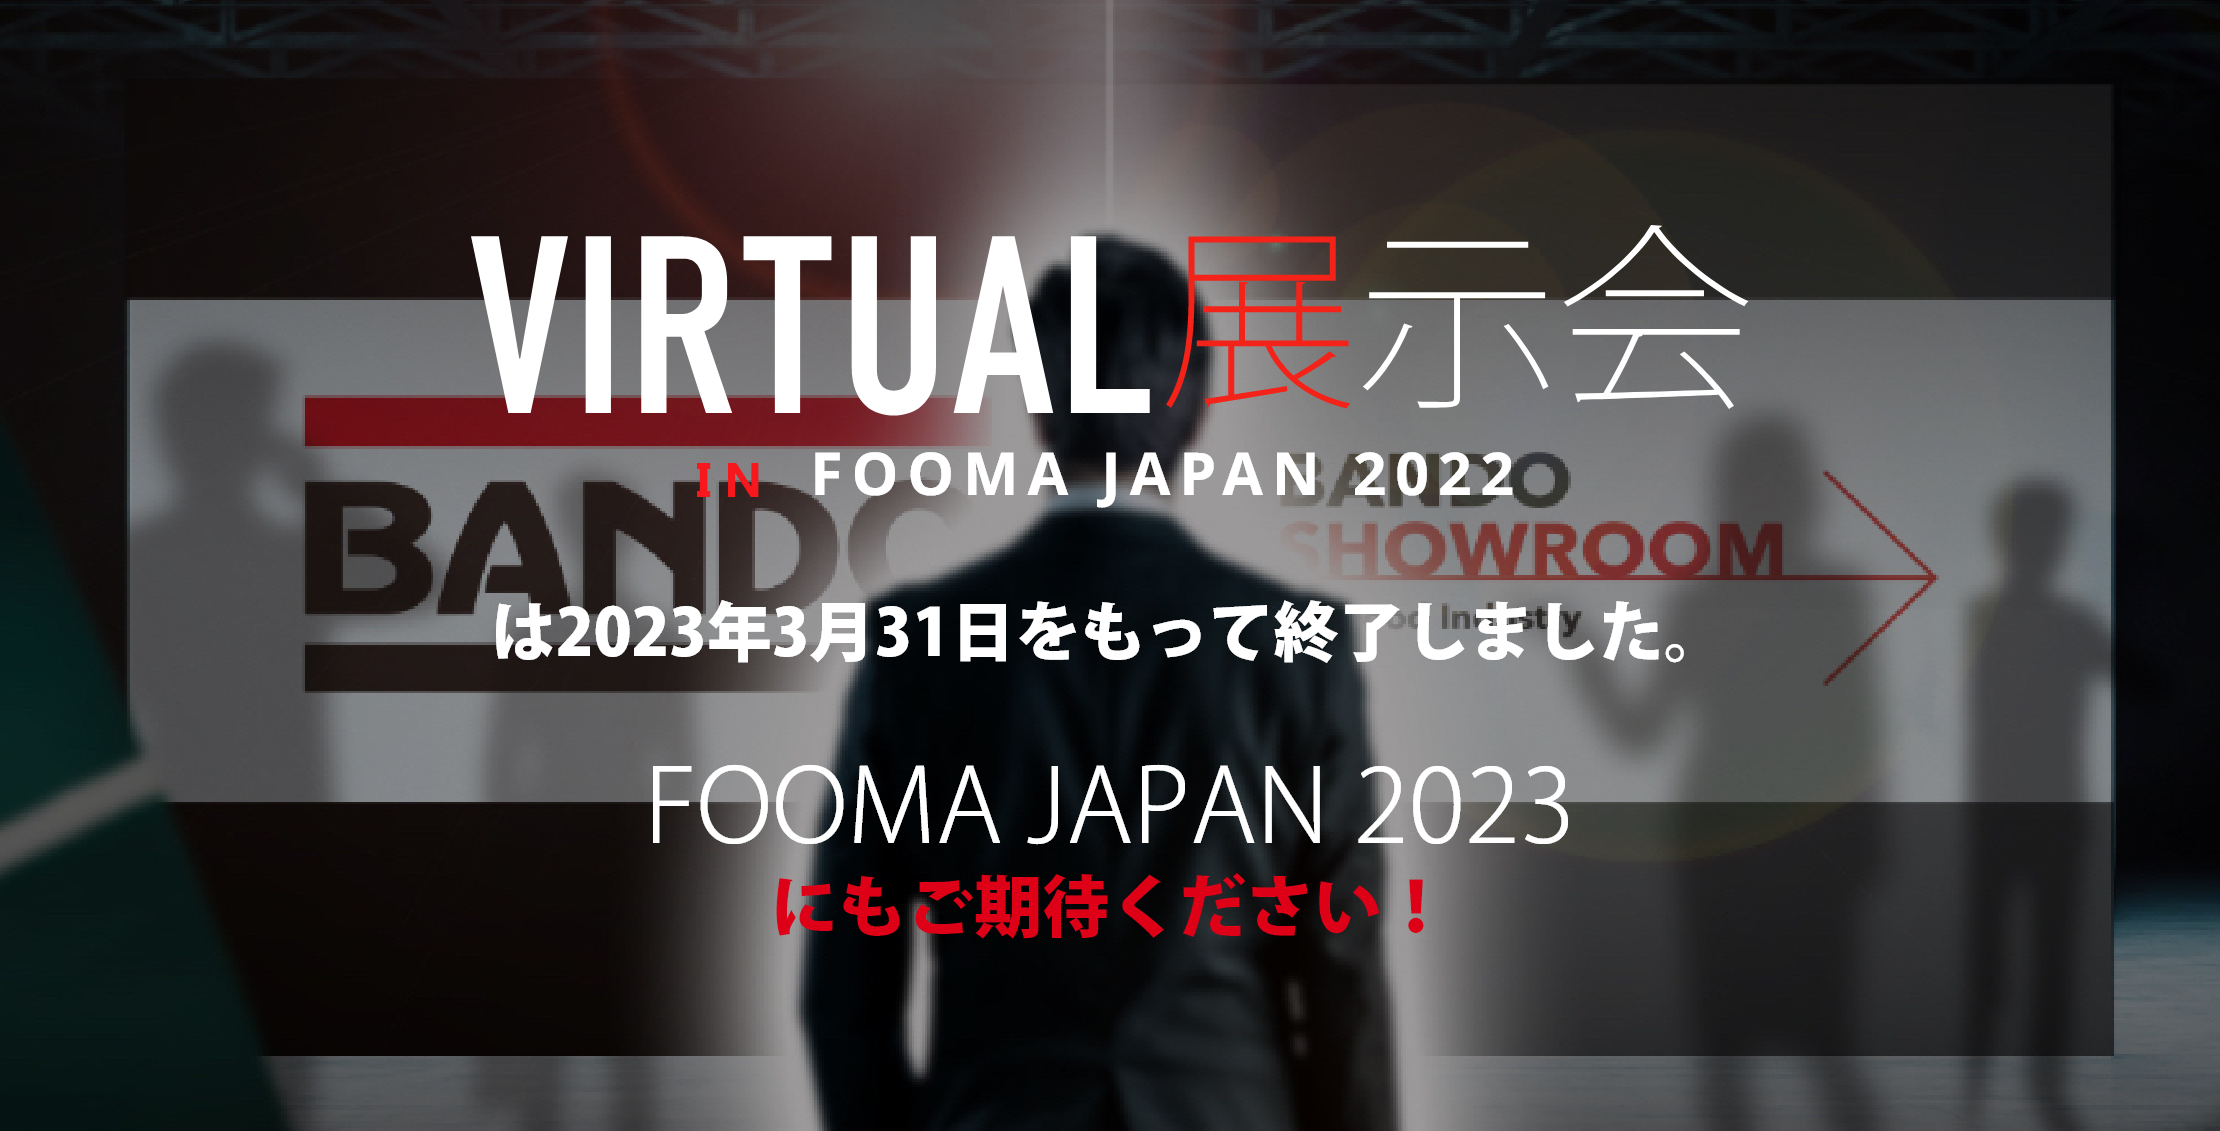 VIRTURL展示会 FOOMA JAPAN 2022は2023年3月31日をもって終了しました。FOOMA JAPAN 2023にもご期待ください！